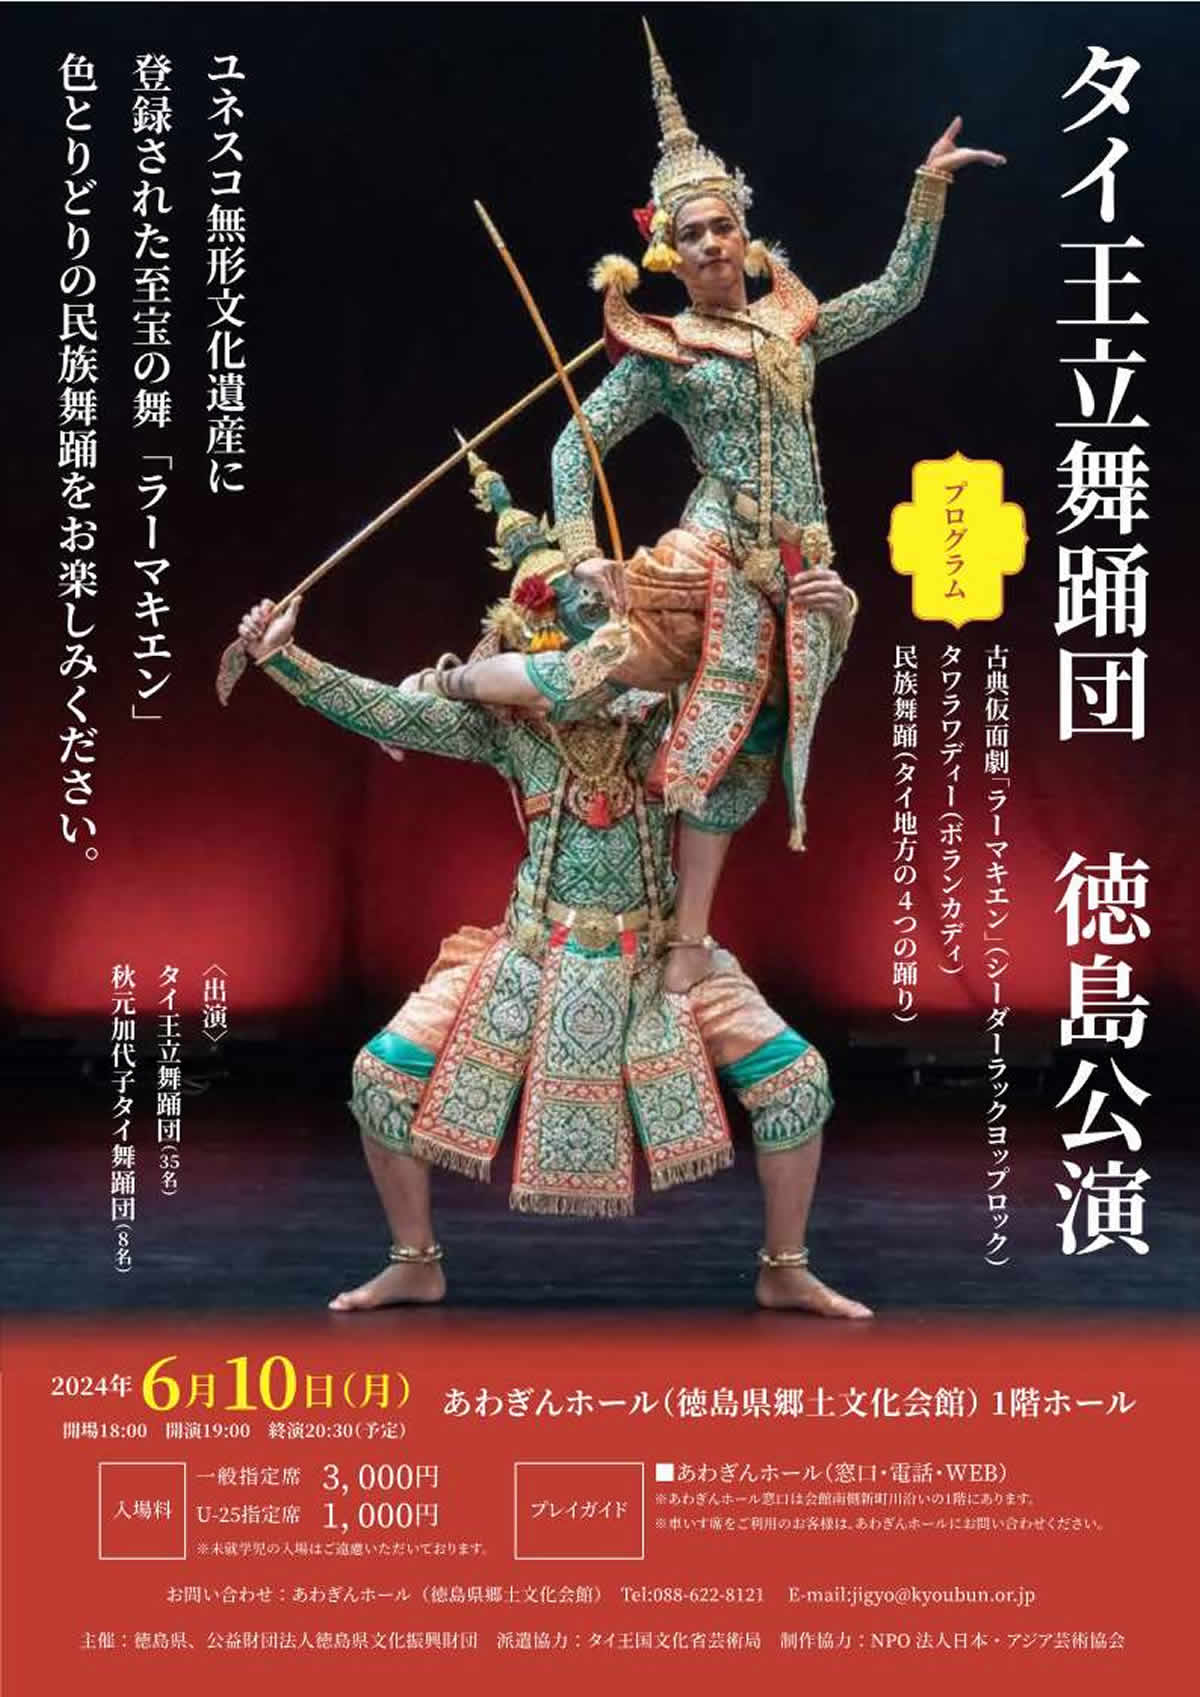 「タイ王立舞踊団 徳島公演」あわぎんホールで6月10日(月)開催